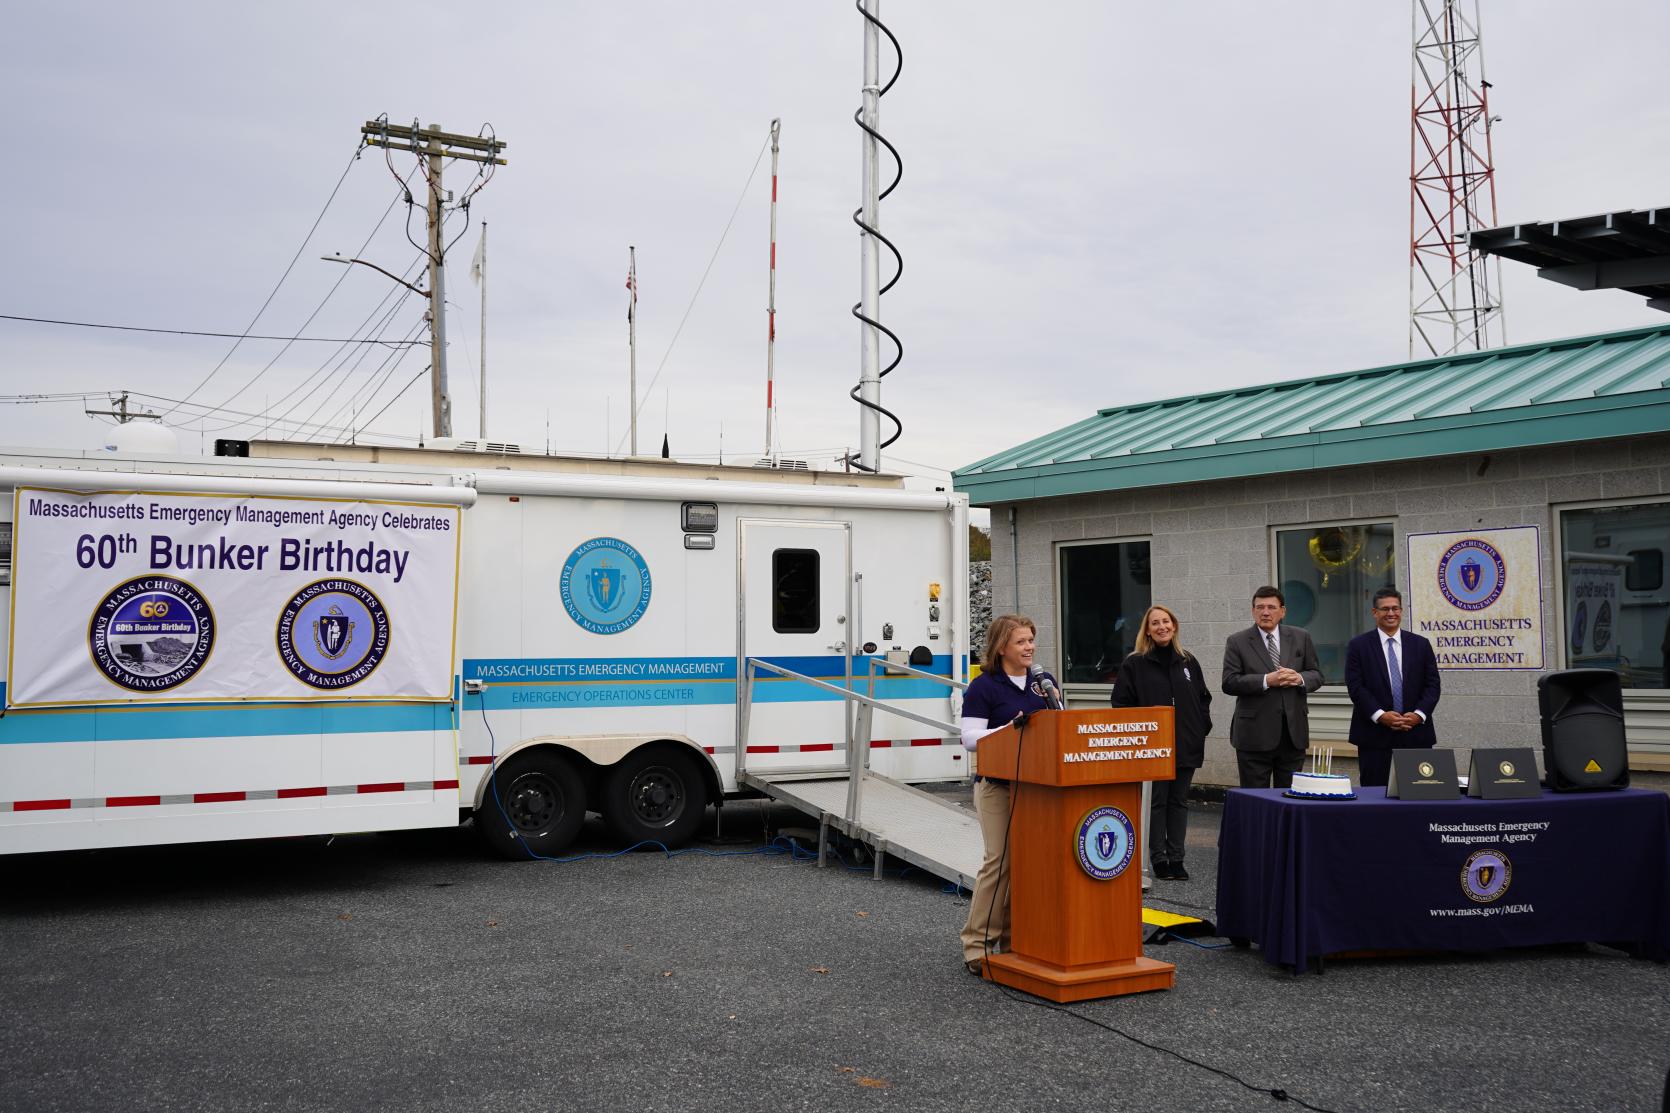 Senior officials provide opening remarks at MEMA's Bunker Birthday celebration